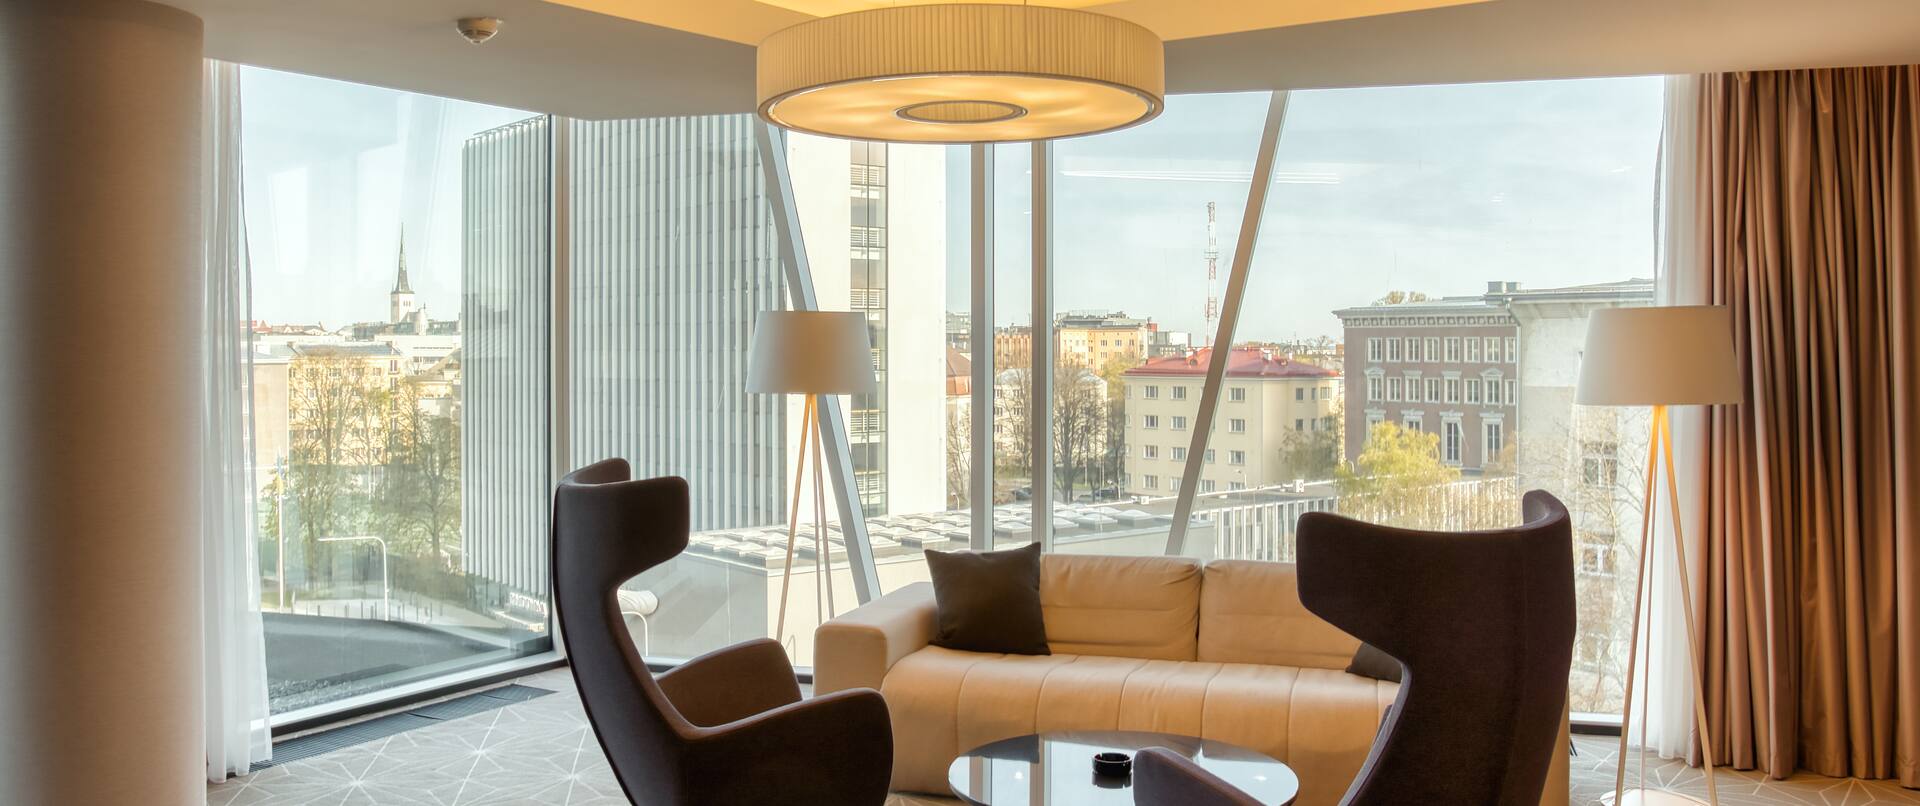 Loungebereich der Suite, Sofa, Kaffeetisch, Stühle, Stadtblick aus dem Fenster